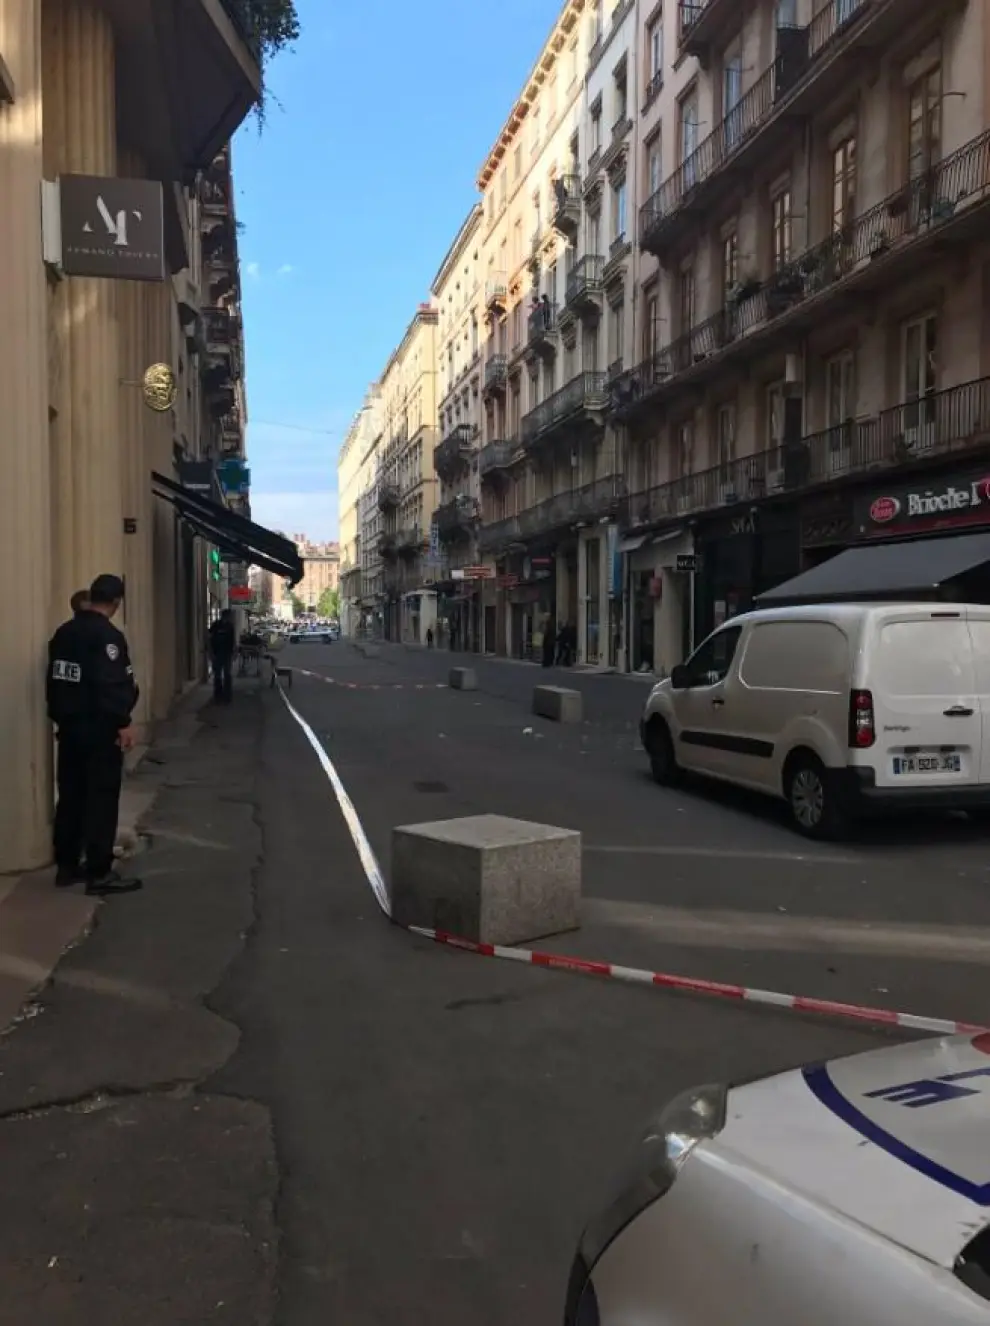 Al parecer, la explosión en el centro de Lyon (Francia) se ha debido a un paquete bomba, aunque no hay confirmación oficial.